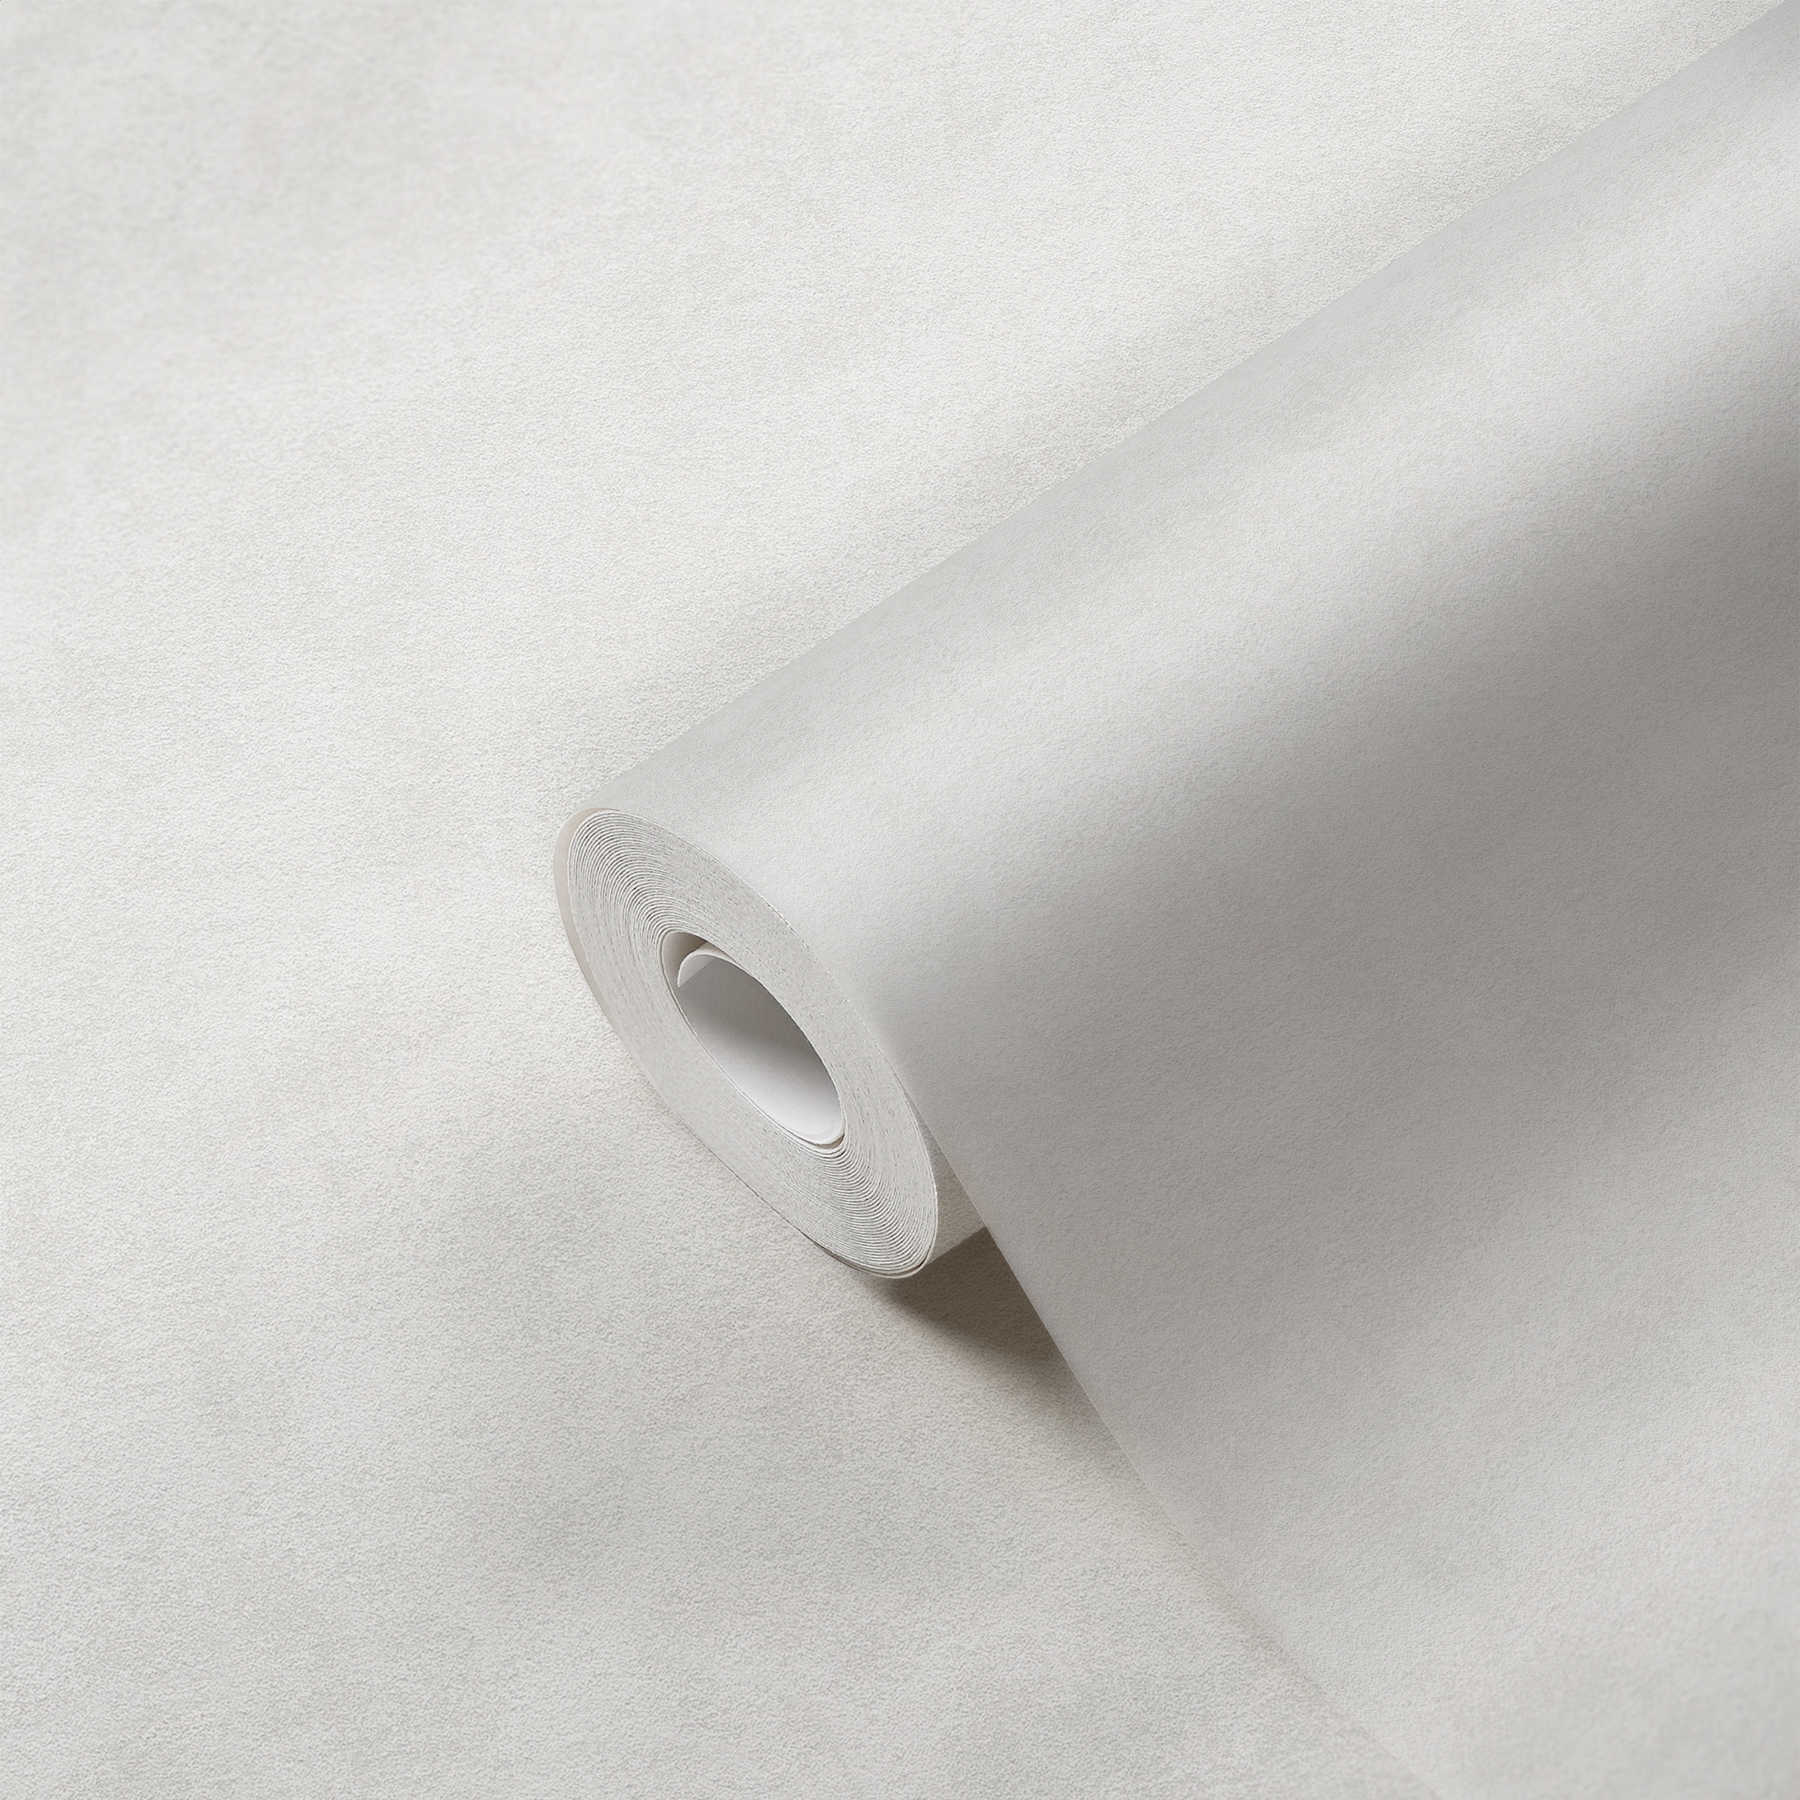             Papier peint uni crème beige avec motifs structurés neutres
        